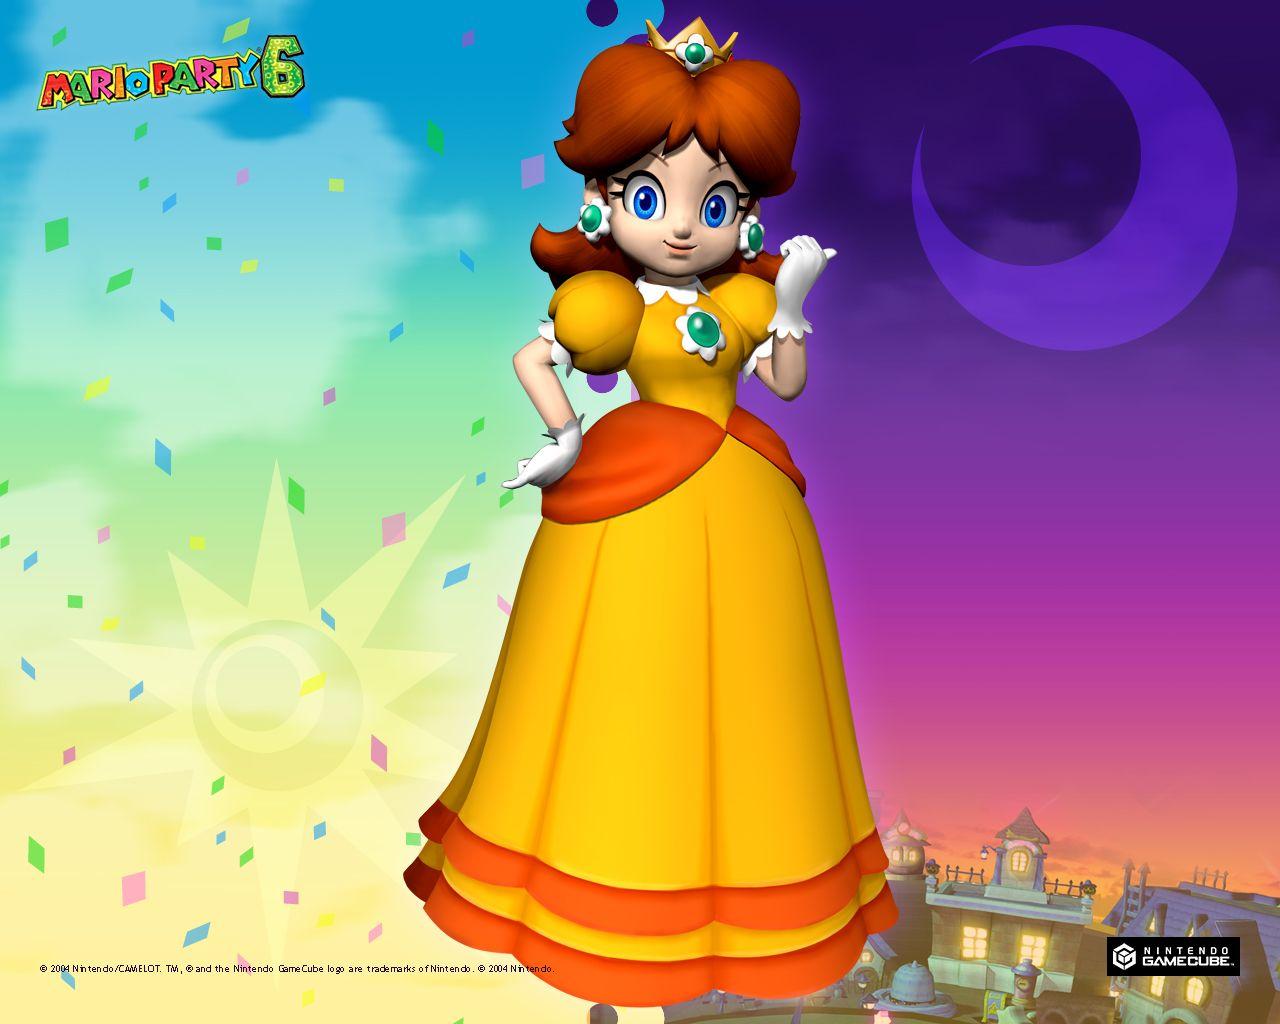 TMK. Downloads. Image. Wallpaper. Mario Party 6 (GCN)